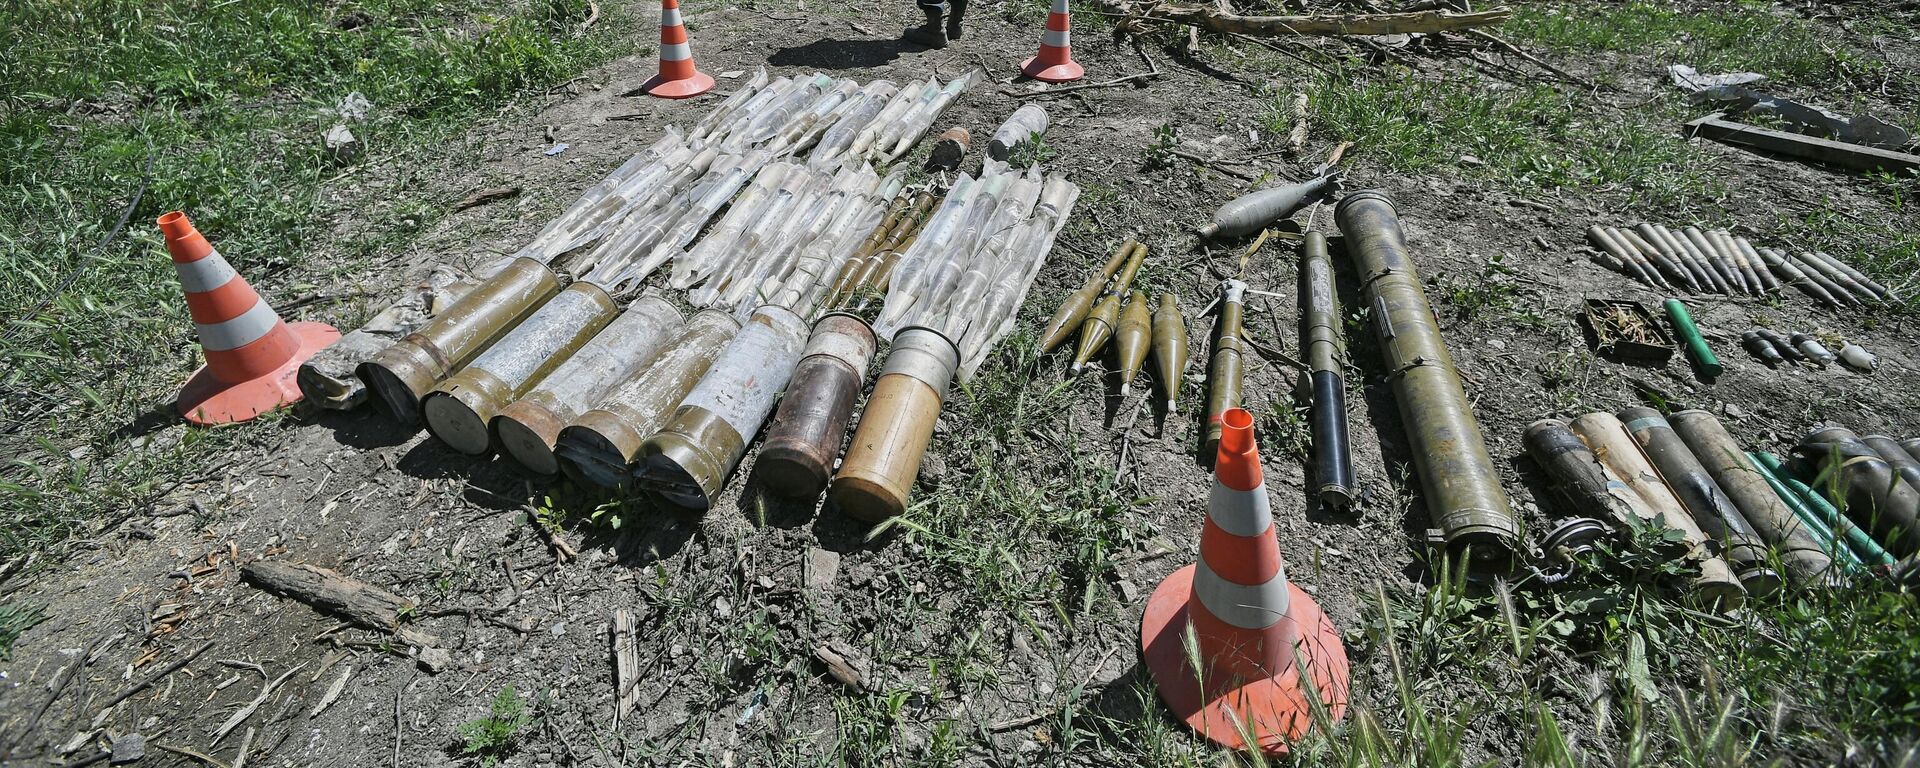 Munições encontradas por funcionários do Ministério para Situações de Emergência da Rússia durante trabalho em escombros de casas de Mariupol, na República Popular de Donetsk (RPD) - Sputnik Brasil, 1920, 13.06.2022